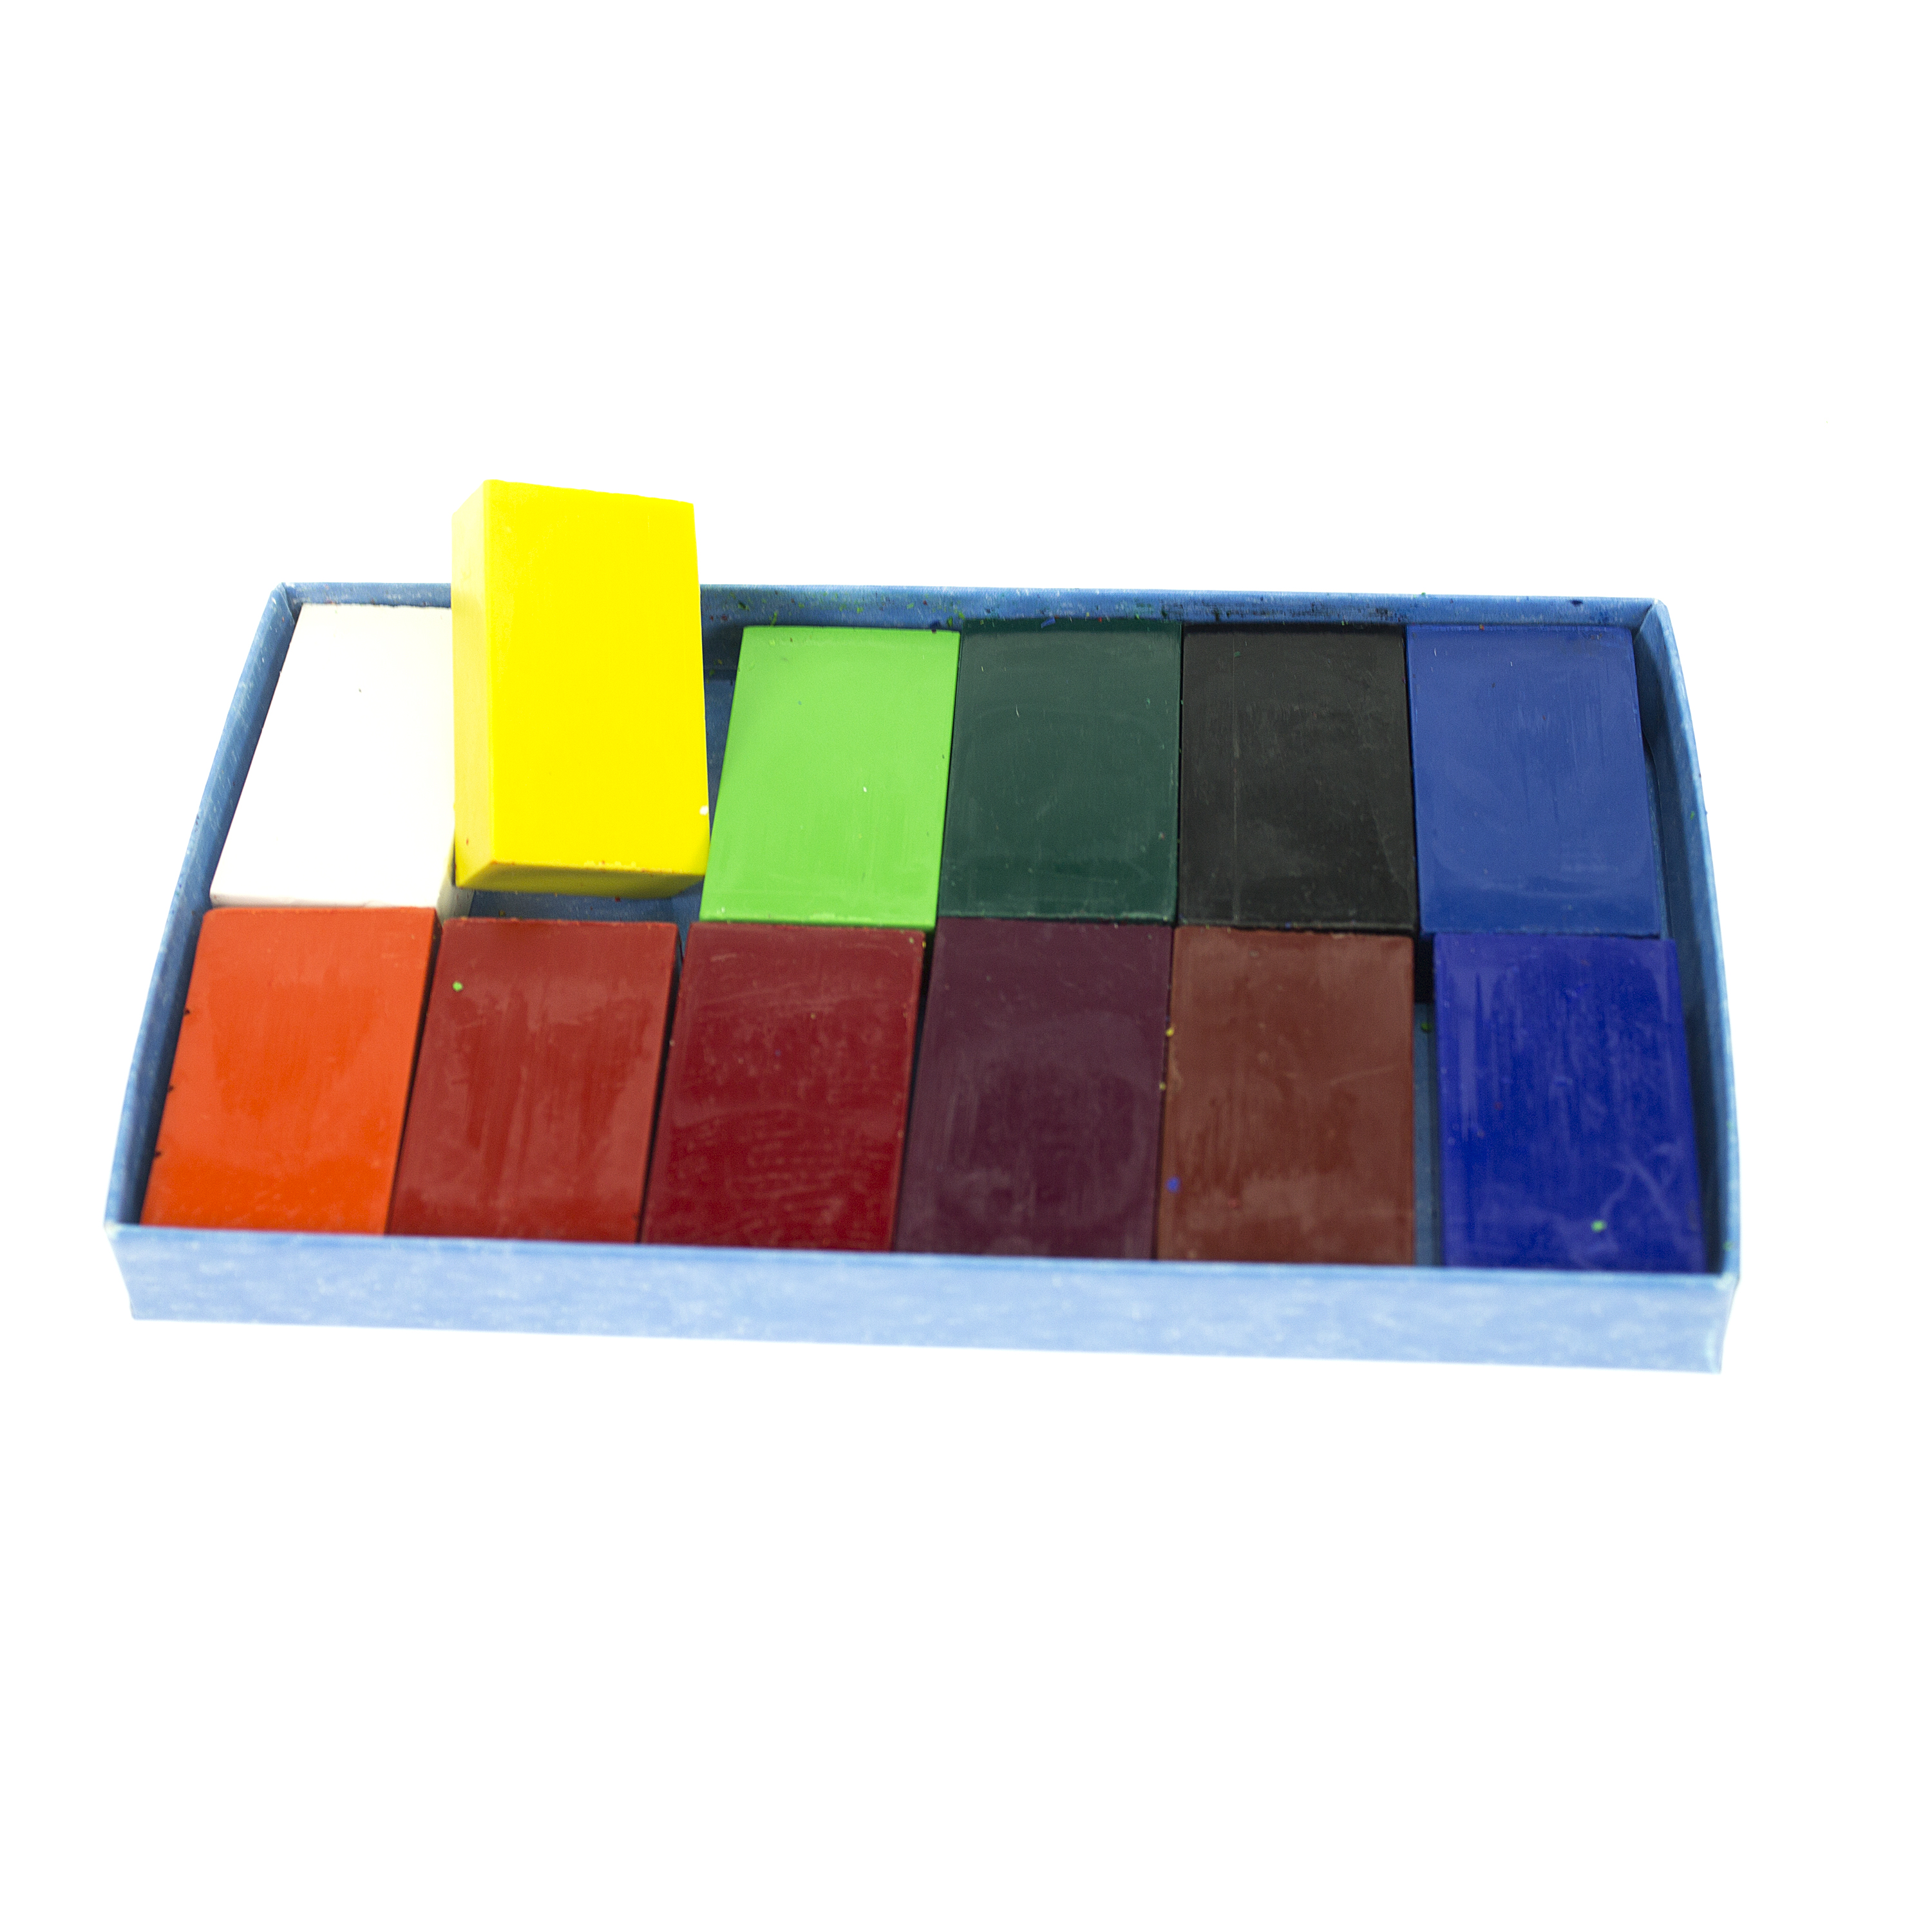 12er-Set Wachsmalblöcke, farbig sortiert, 4,1 x 2,3 x 1,2 cm